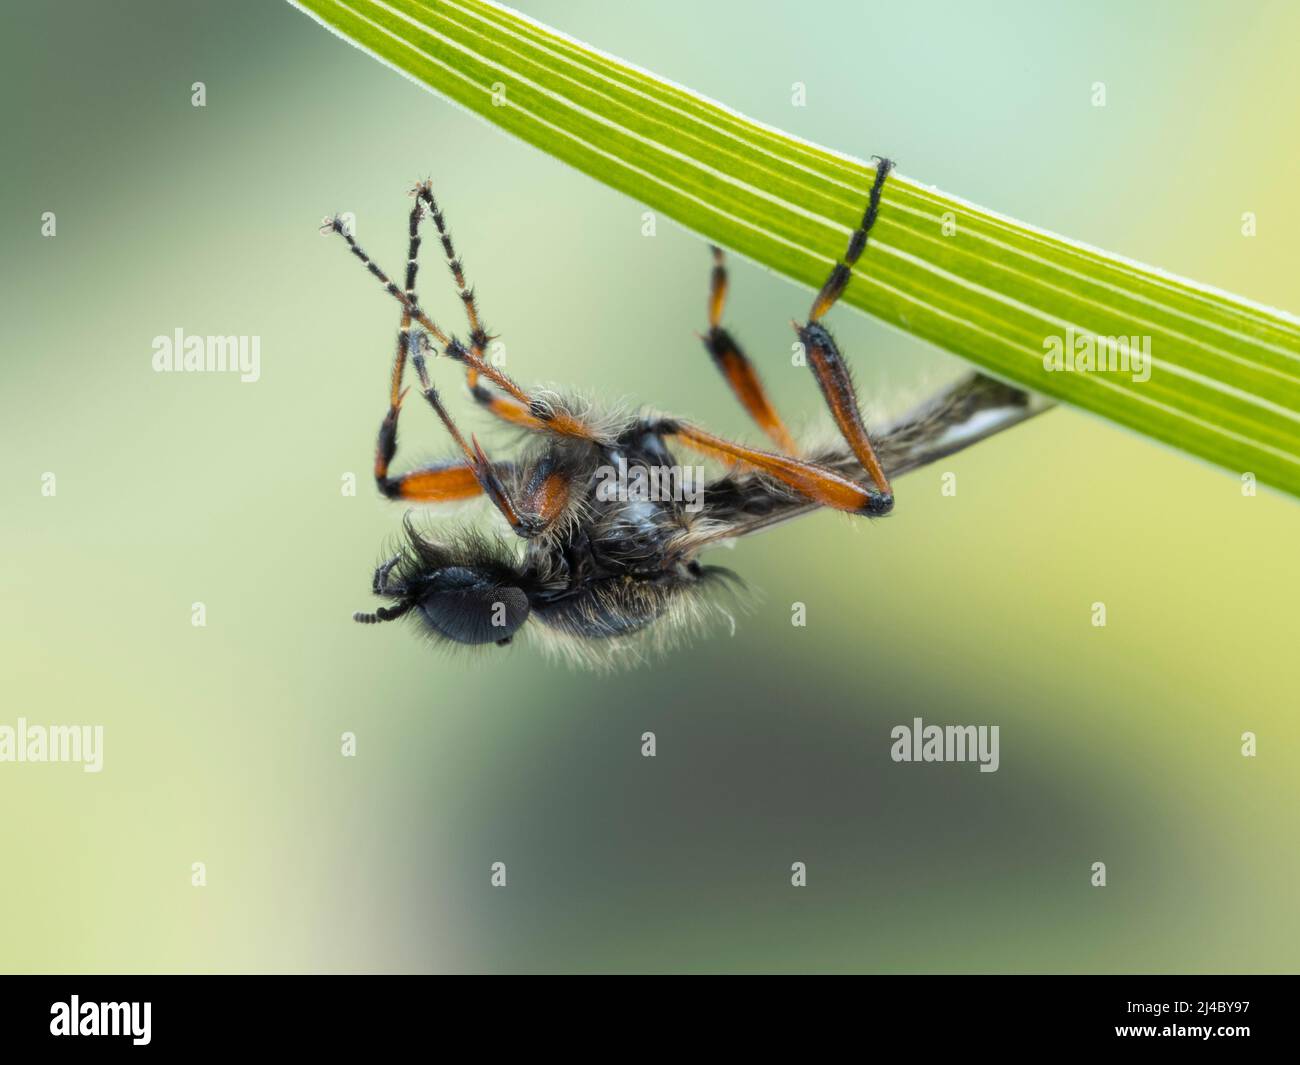 Gros plan d'une mouche de mars (Bibio vestitus) mâle colorée et velue, reposant sous une feuille de plante Banque D'Images